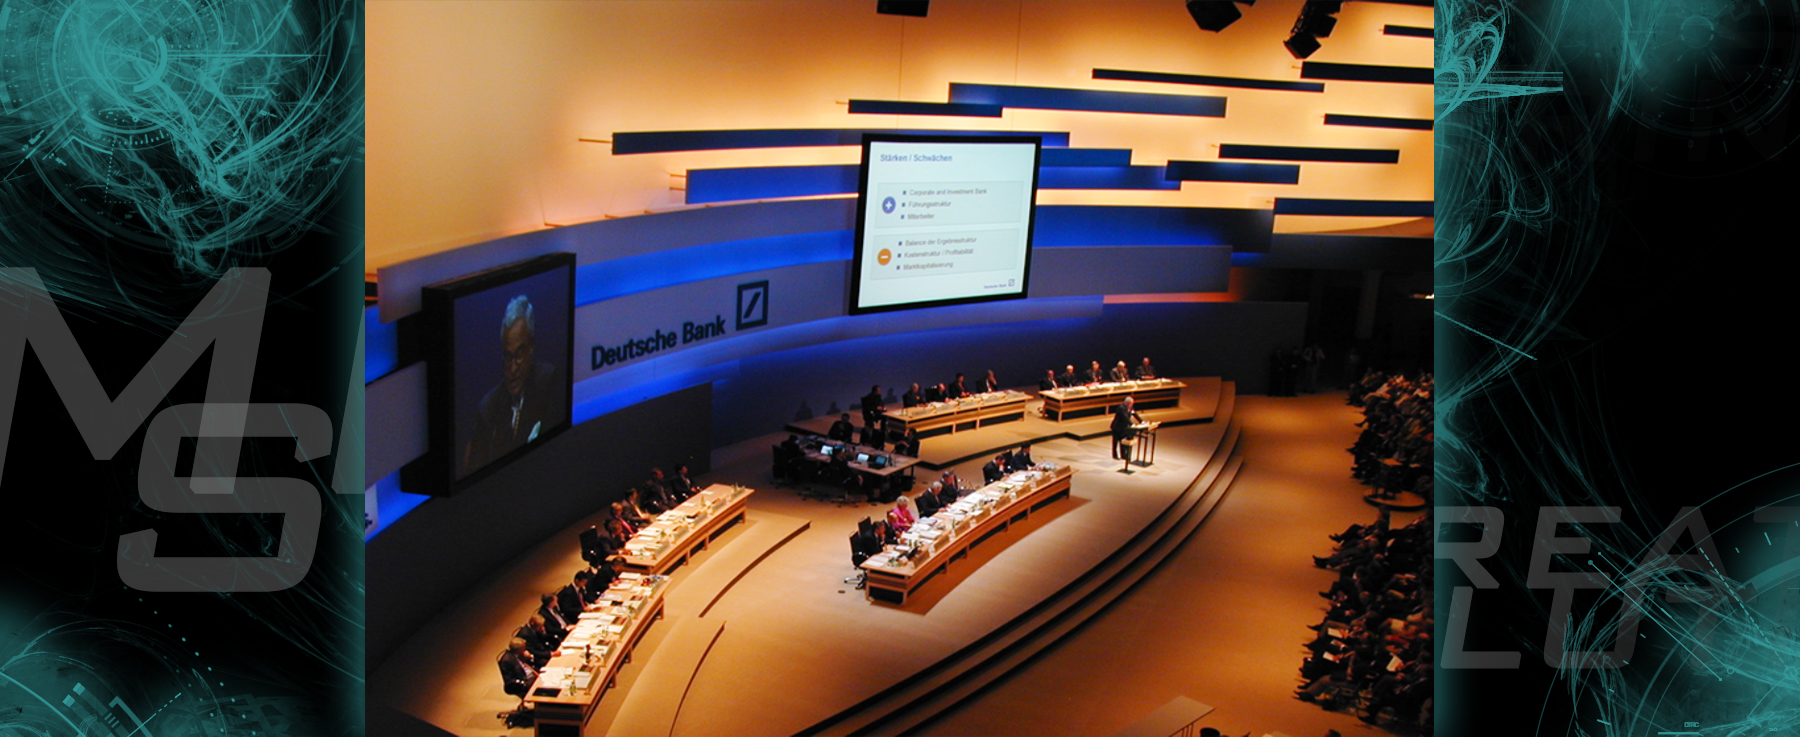 Deutsche Bank shareholders meeting